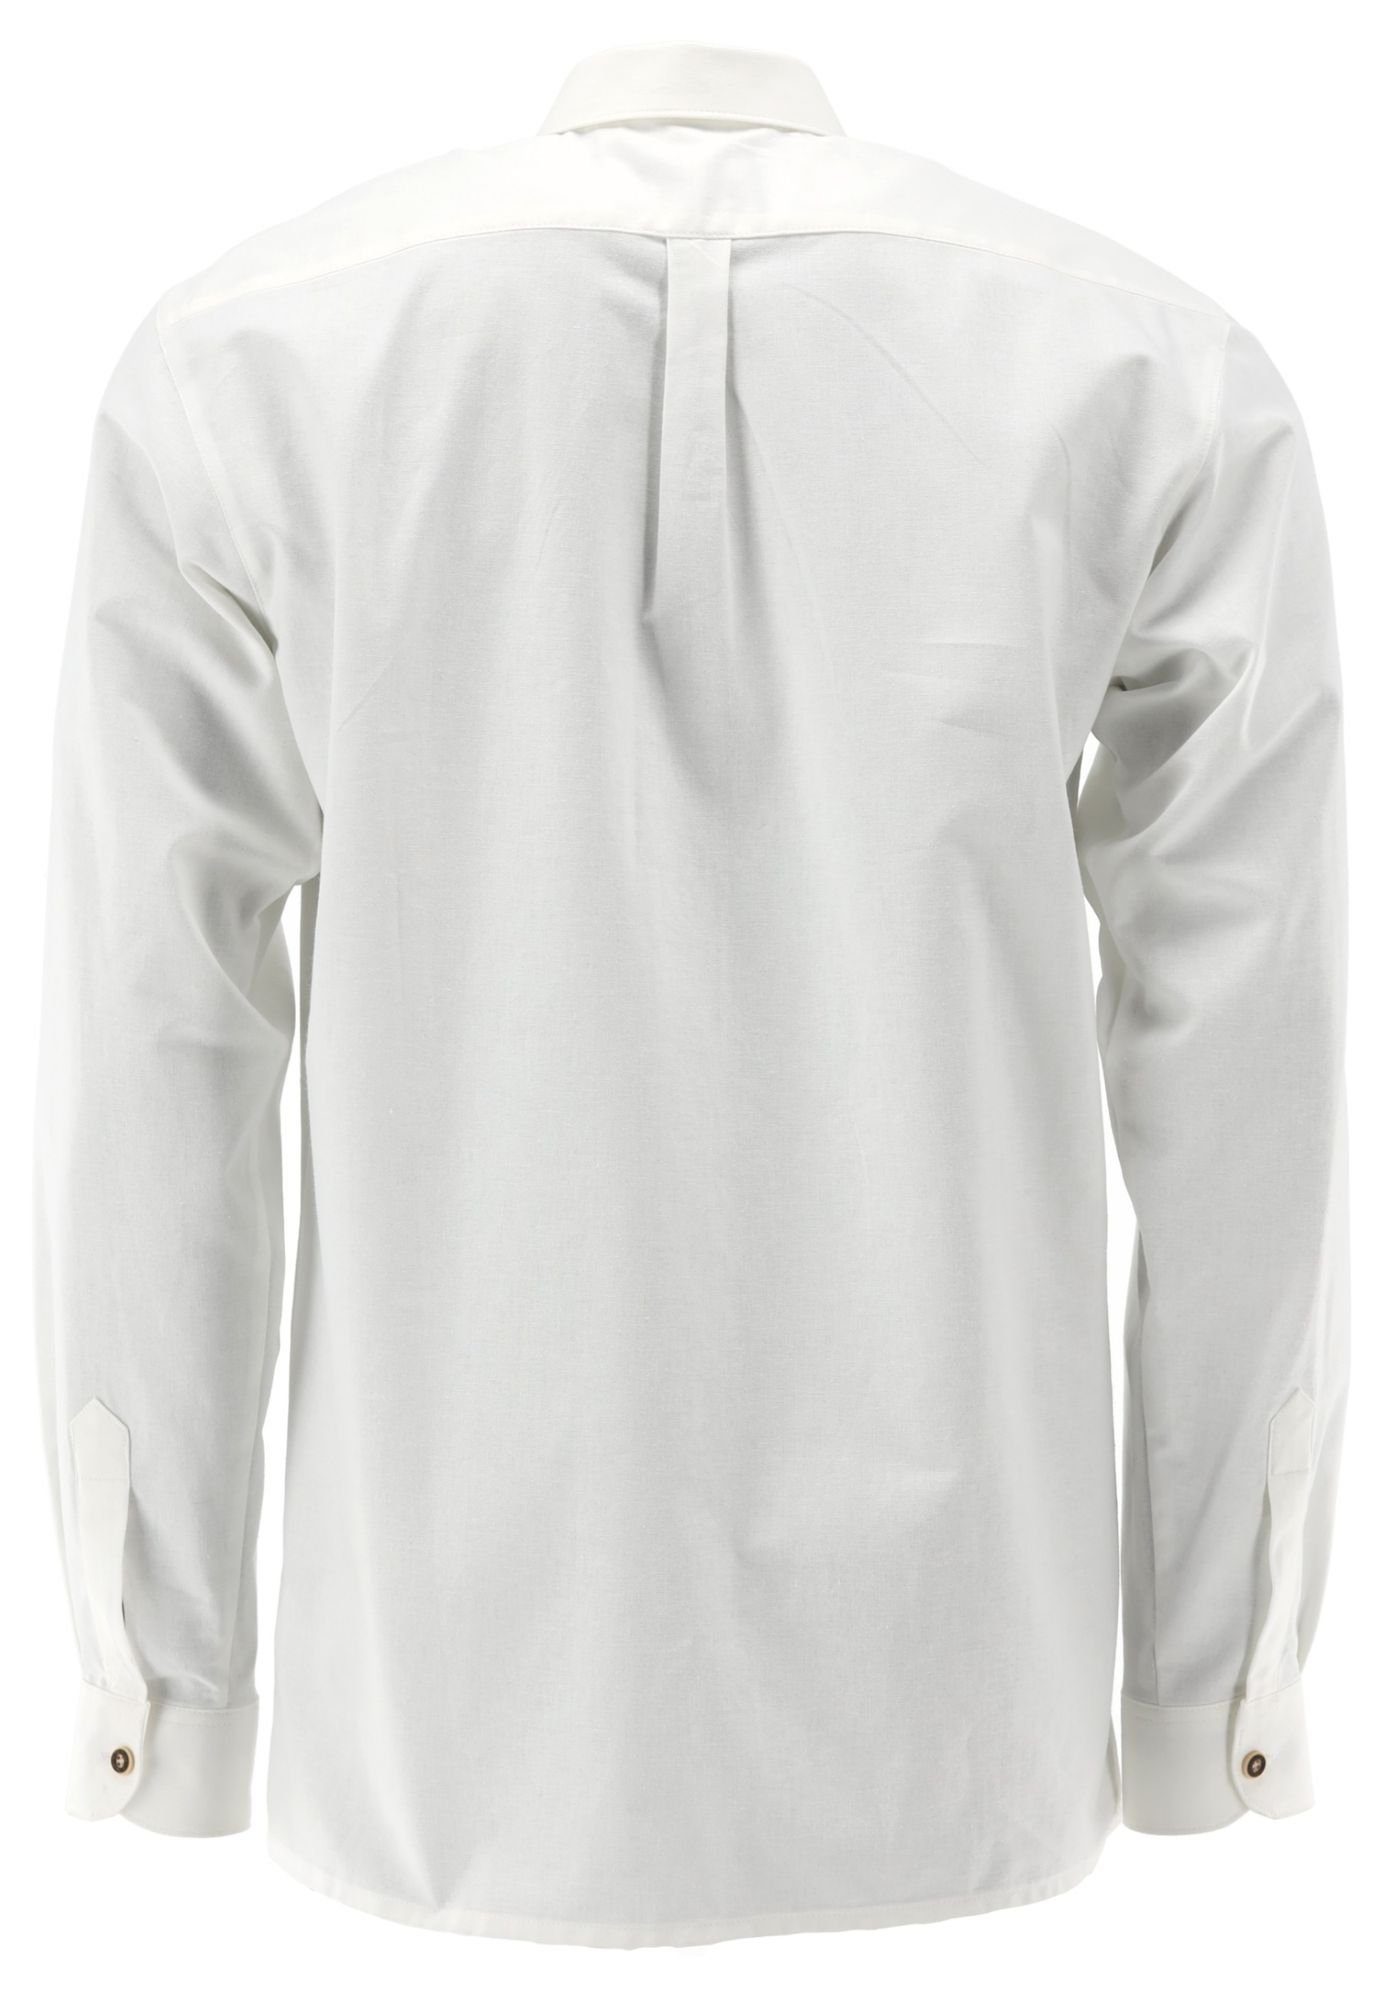 OS-Trachten Trachtenhemd Komvuci mit extra langen Ärmeln, 2x2 Biesen